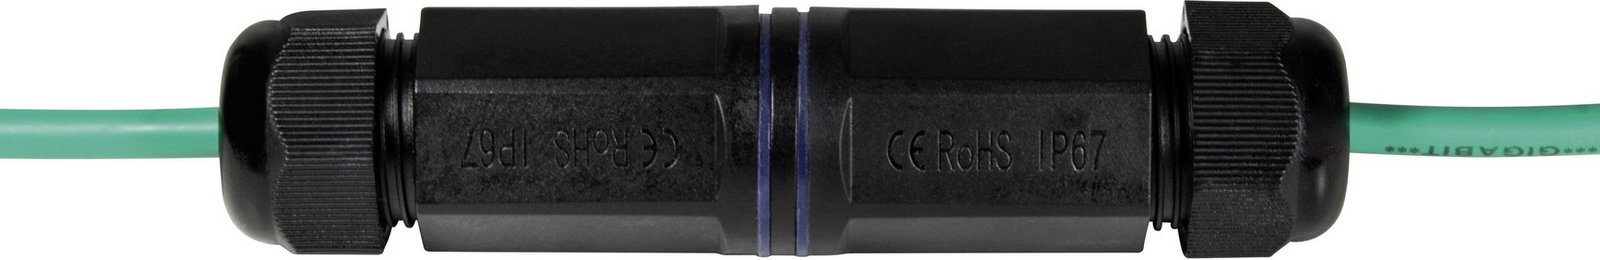 LogiLink  síťový adaptér  [1x RJ45 zásuvka - 1x RJ45 zásuvka]  černá